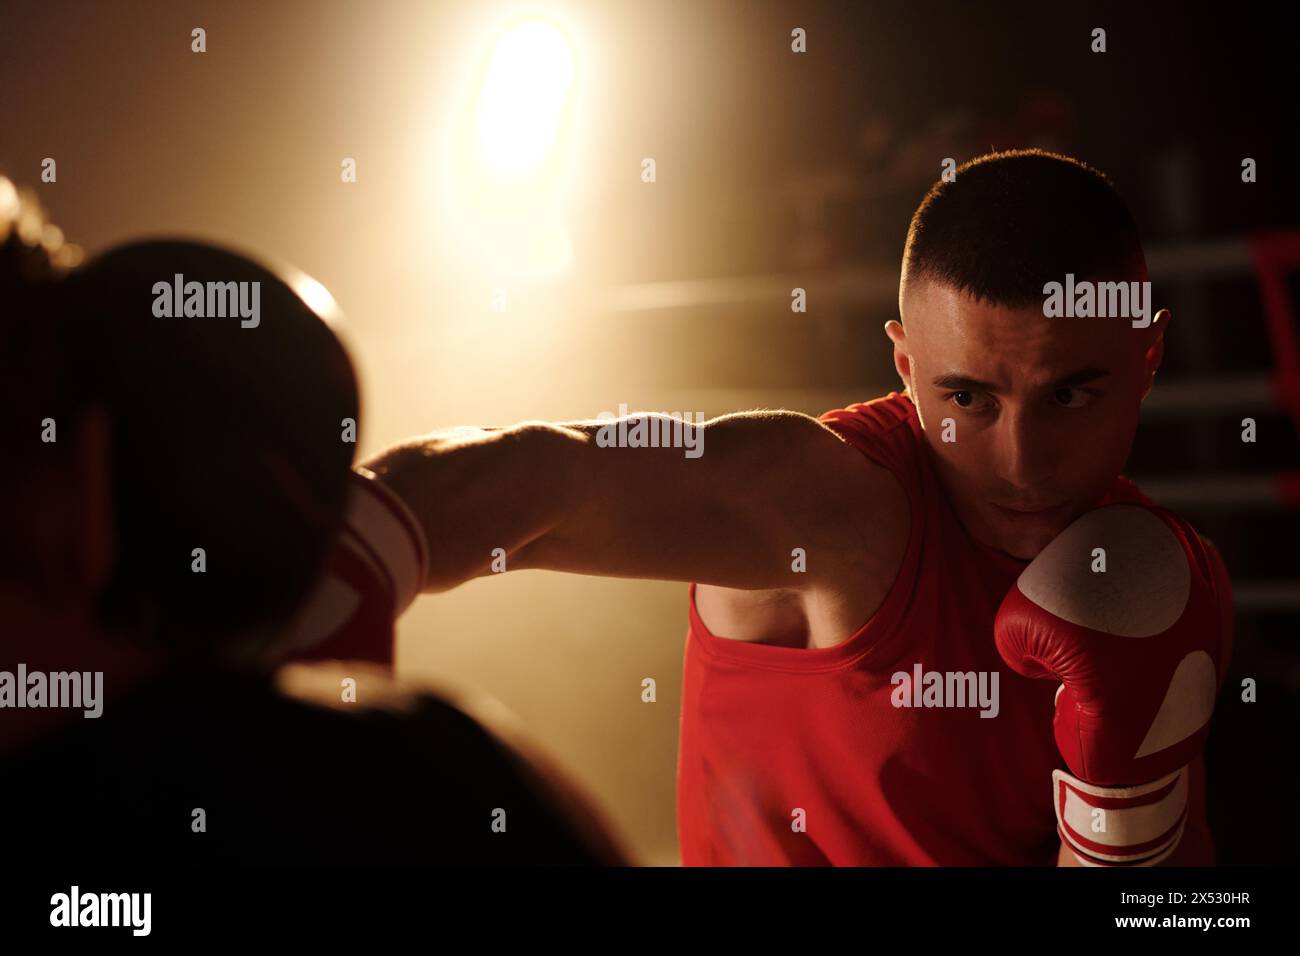 Junger muskulöser Mann in roter Sportbekleidung und Boxhandschuhen, der seinen Rivalen ansieht, während er ihn während der Runde am Ring auf den Kopf tritt Stockfoto